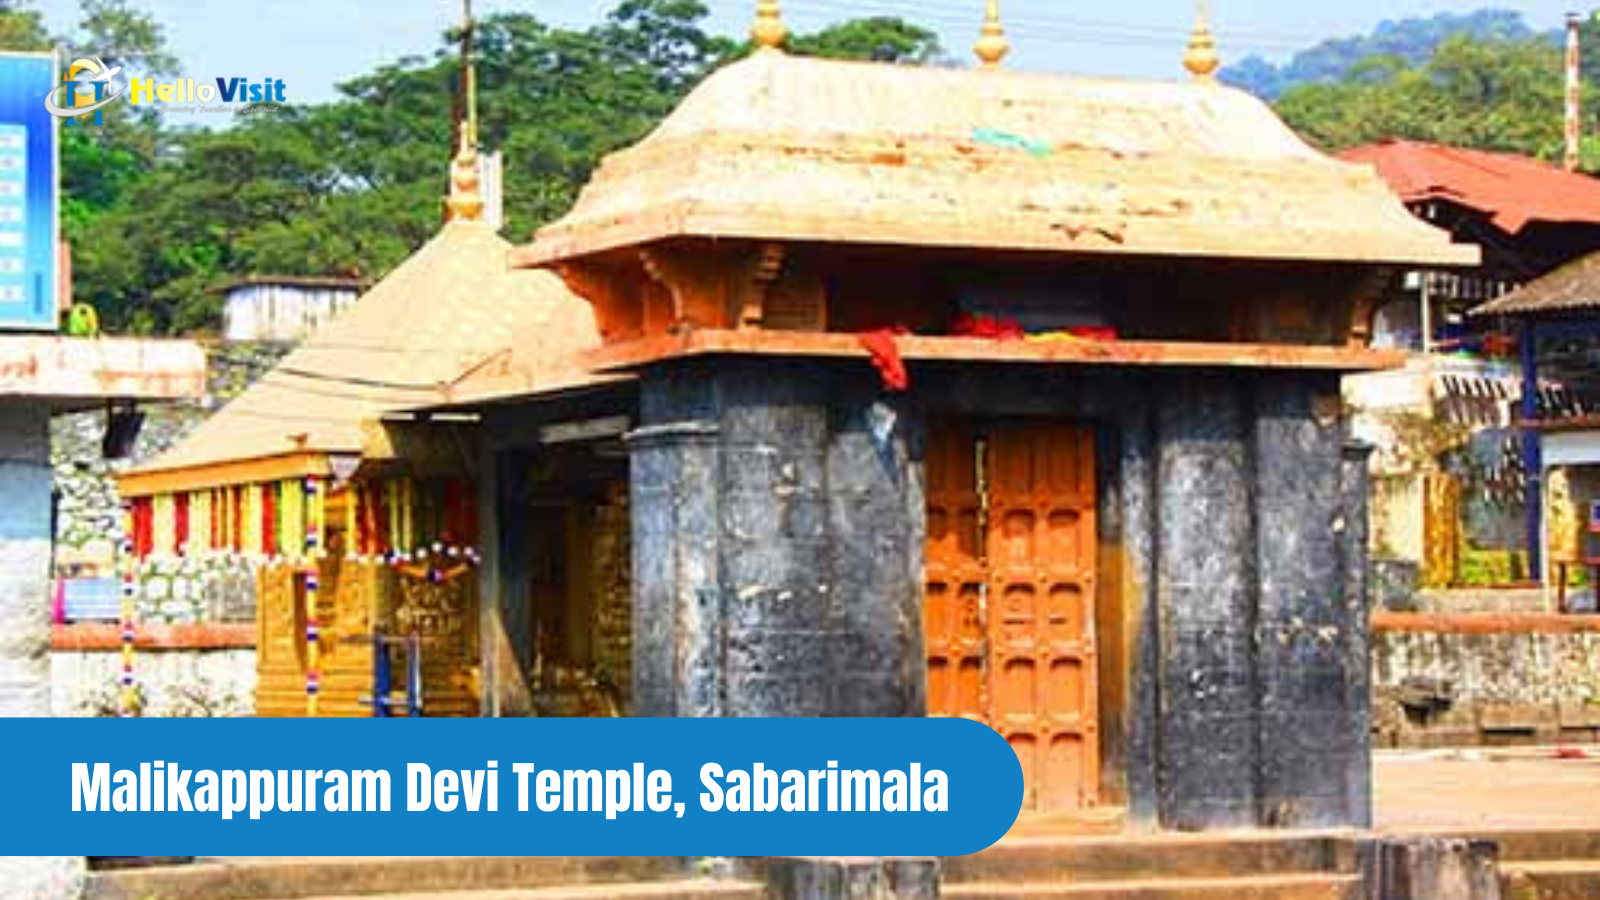 Malikappuram Devi Temple, Sabarimala